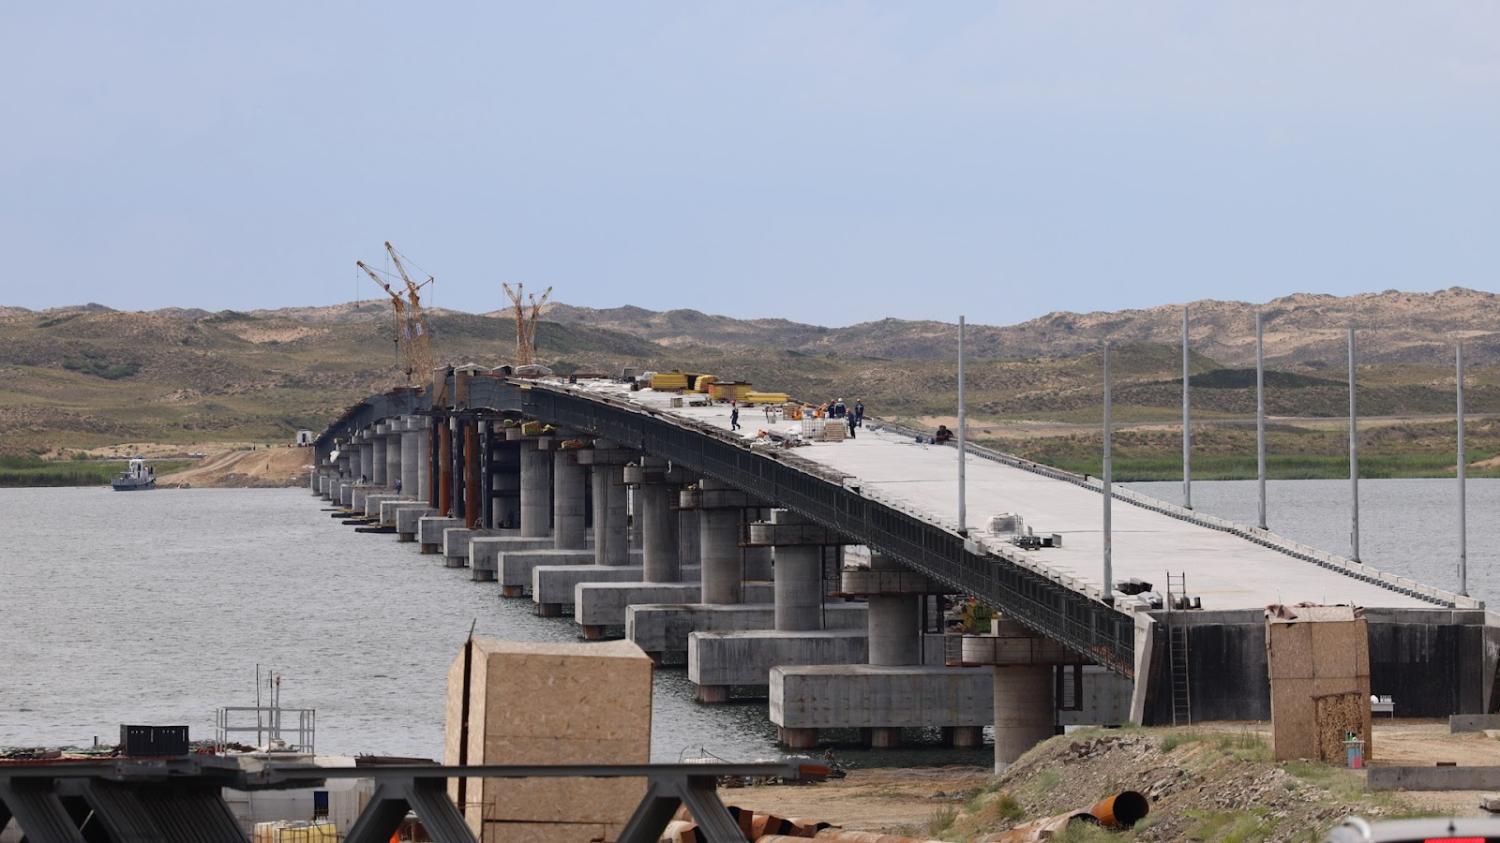 Через Бухтарминское водохранилище активно строится самый протяженный мост страны